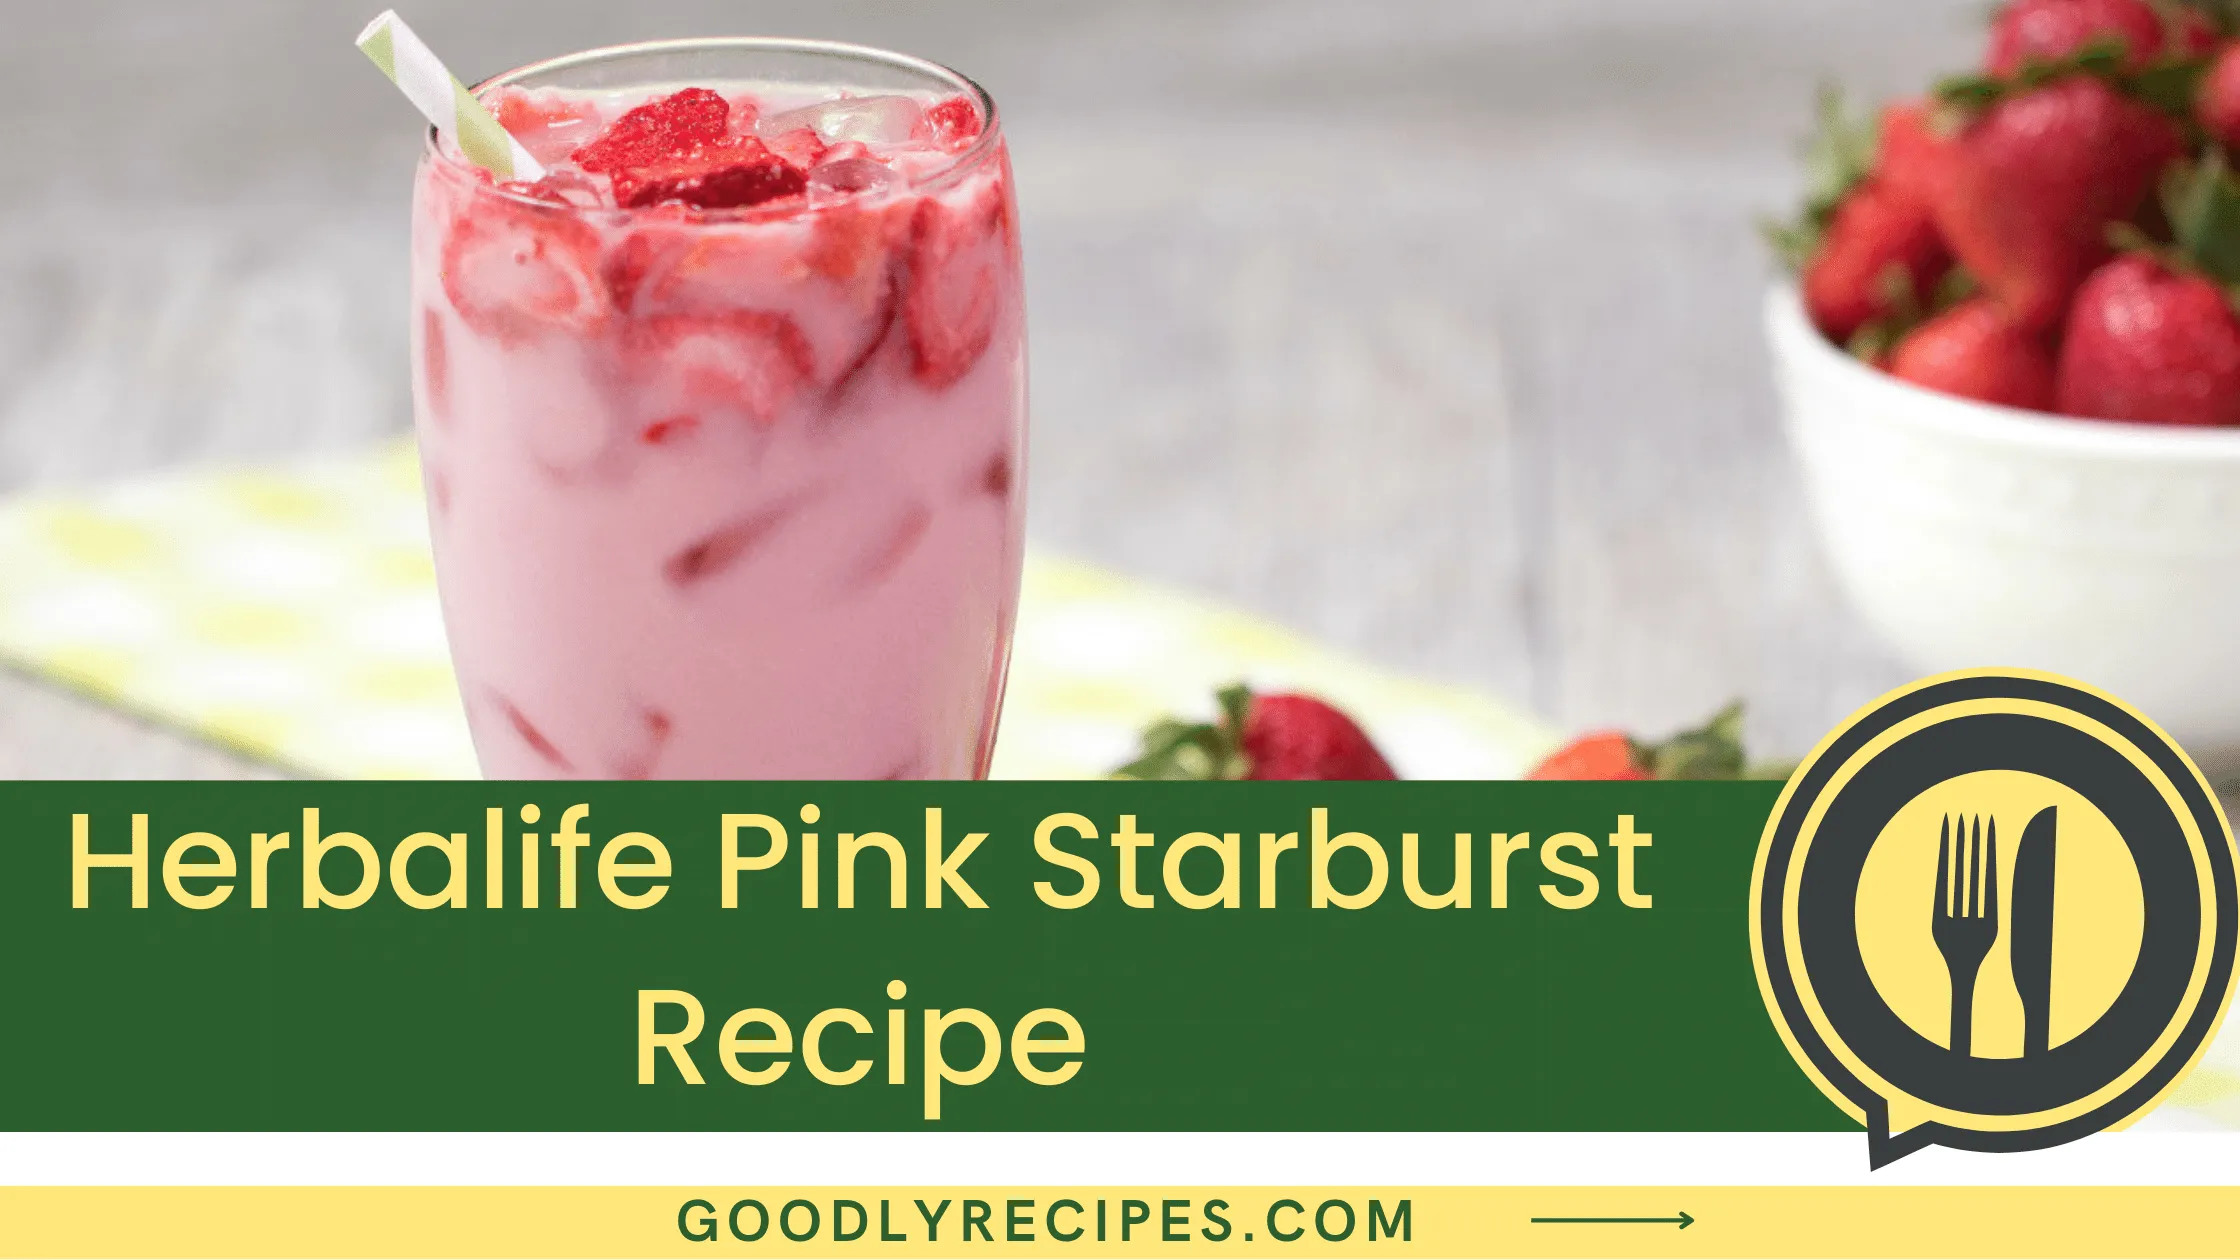 Herbalife Pink Starburst Recipe